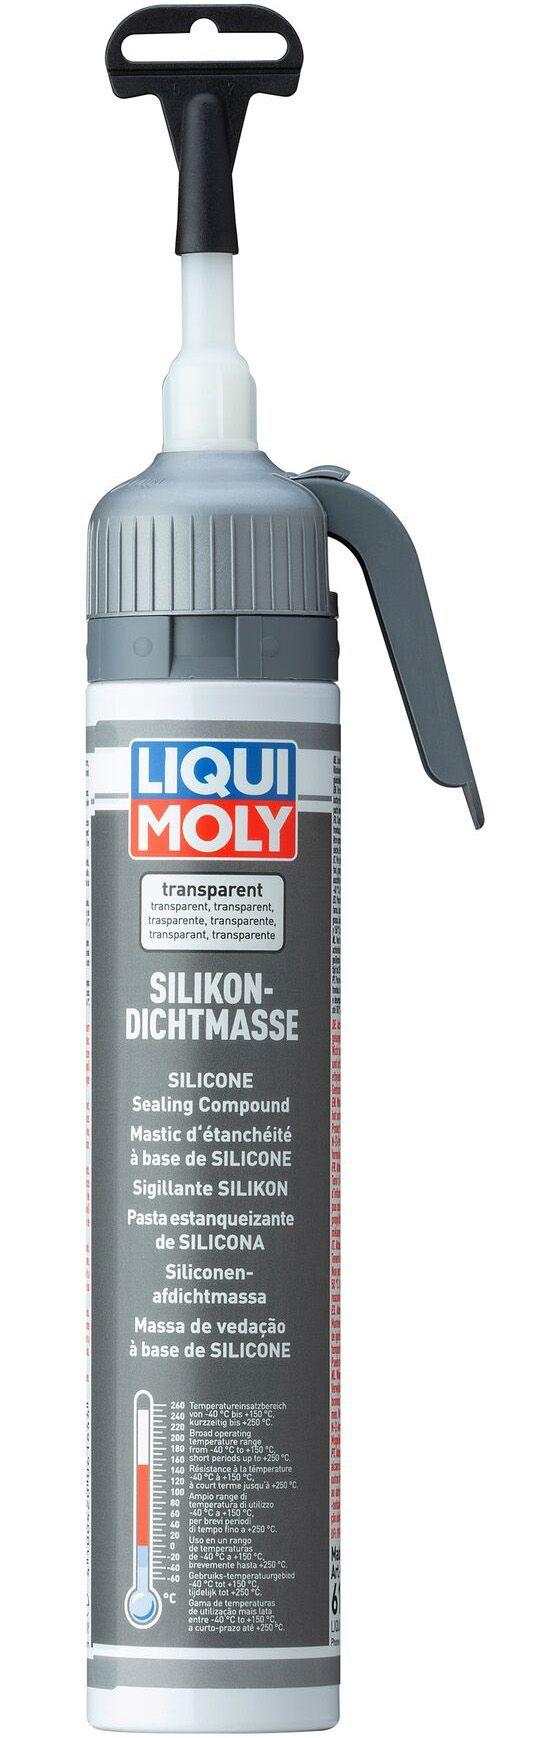 Силиконовый герметик Liqui Moly Silikon-Dichtmasse transparent, 200 мл (6184)